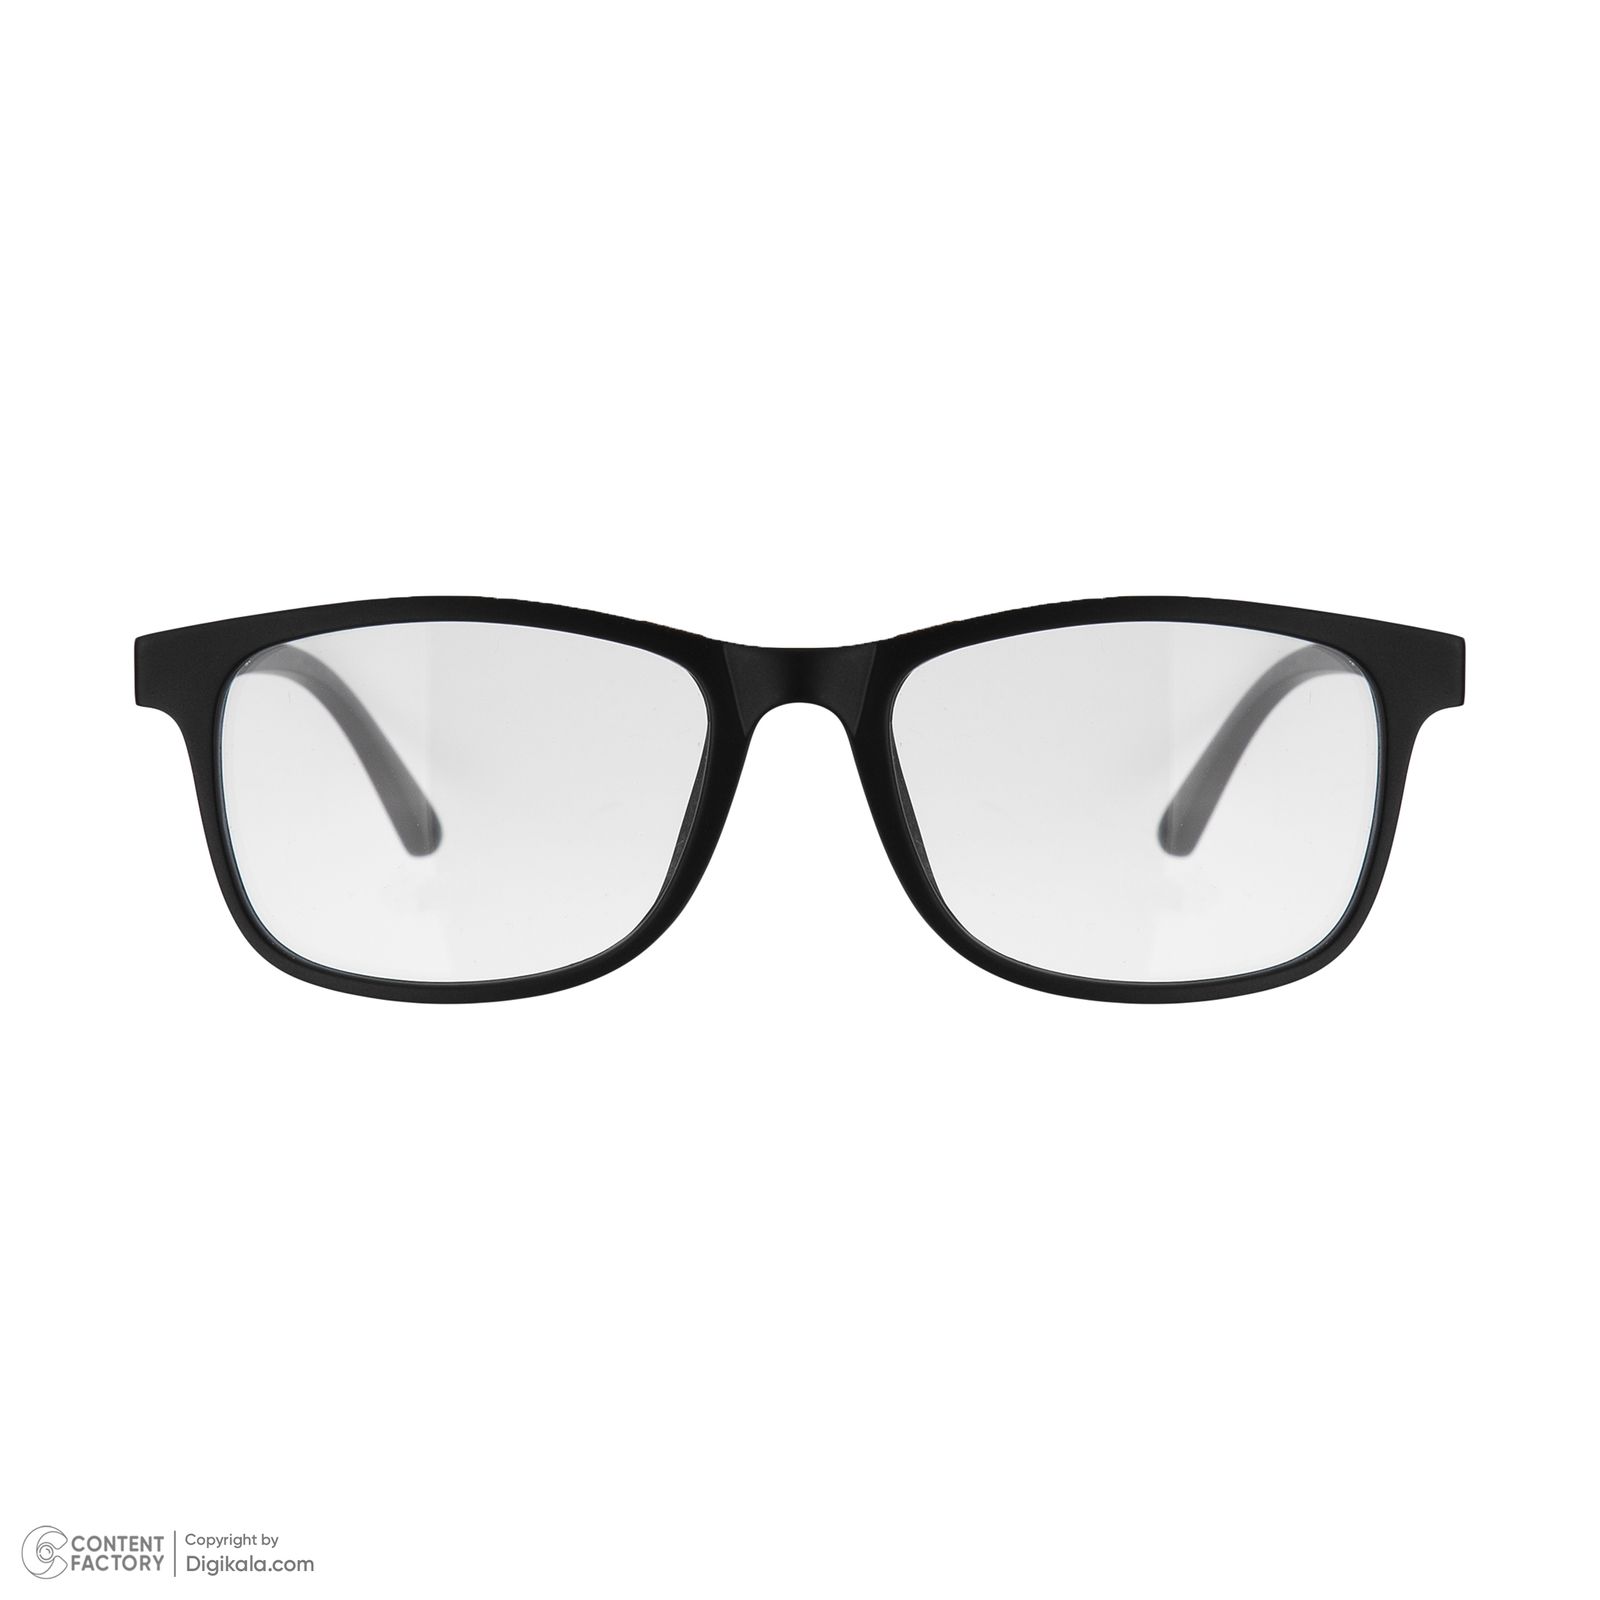 فریم عینک طبی دونیک مدل tr2291-c2 به همراه کاور آفتابی مجموعه 6 عددی -  - 3